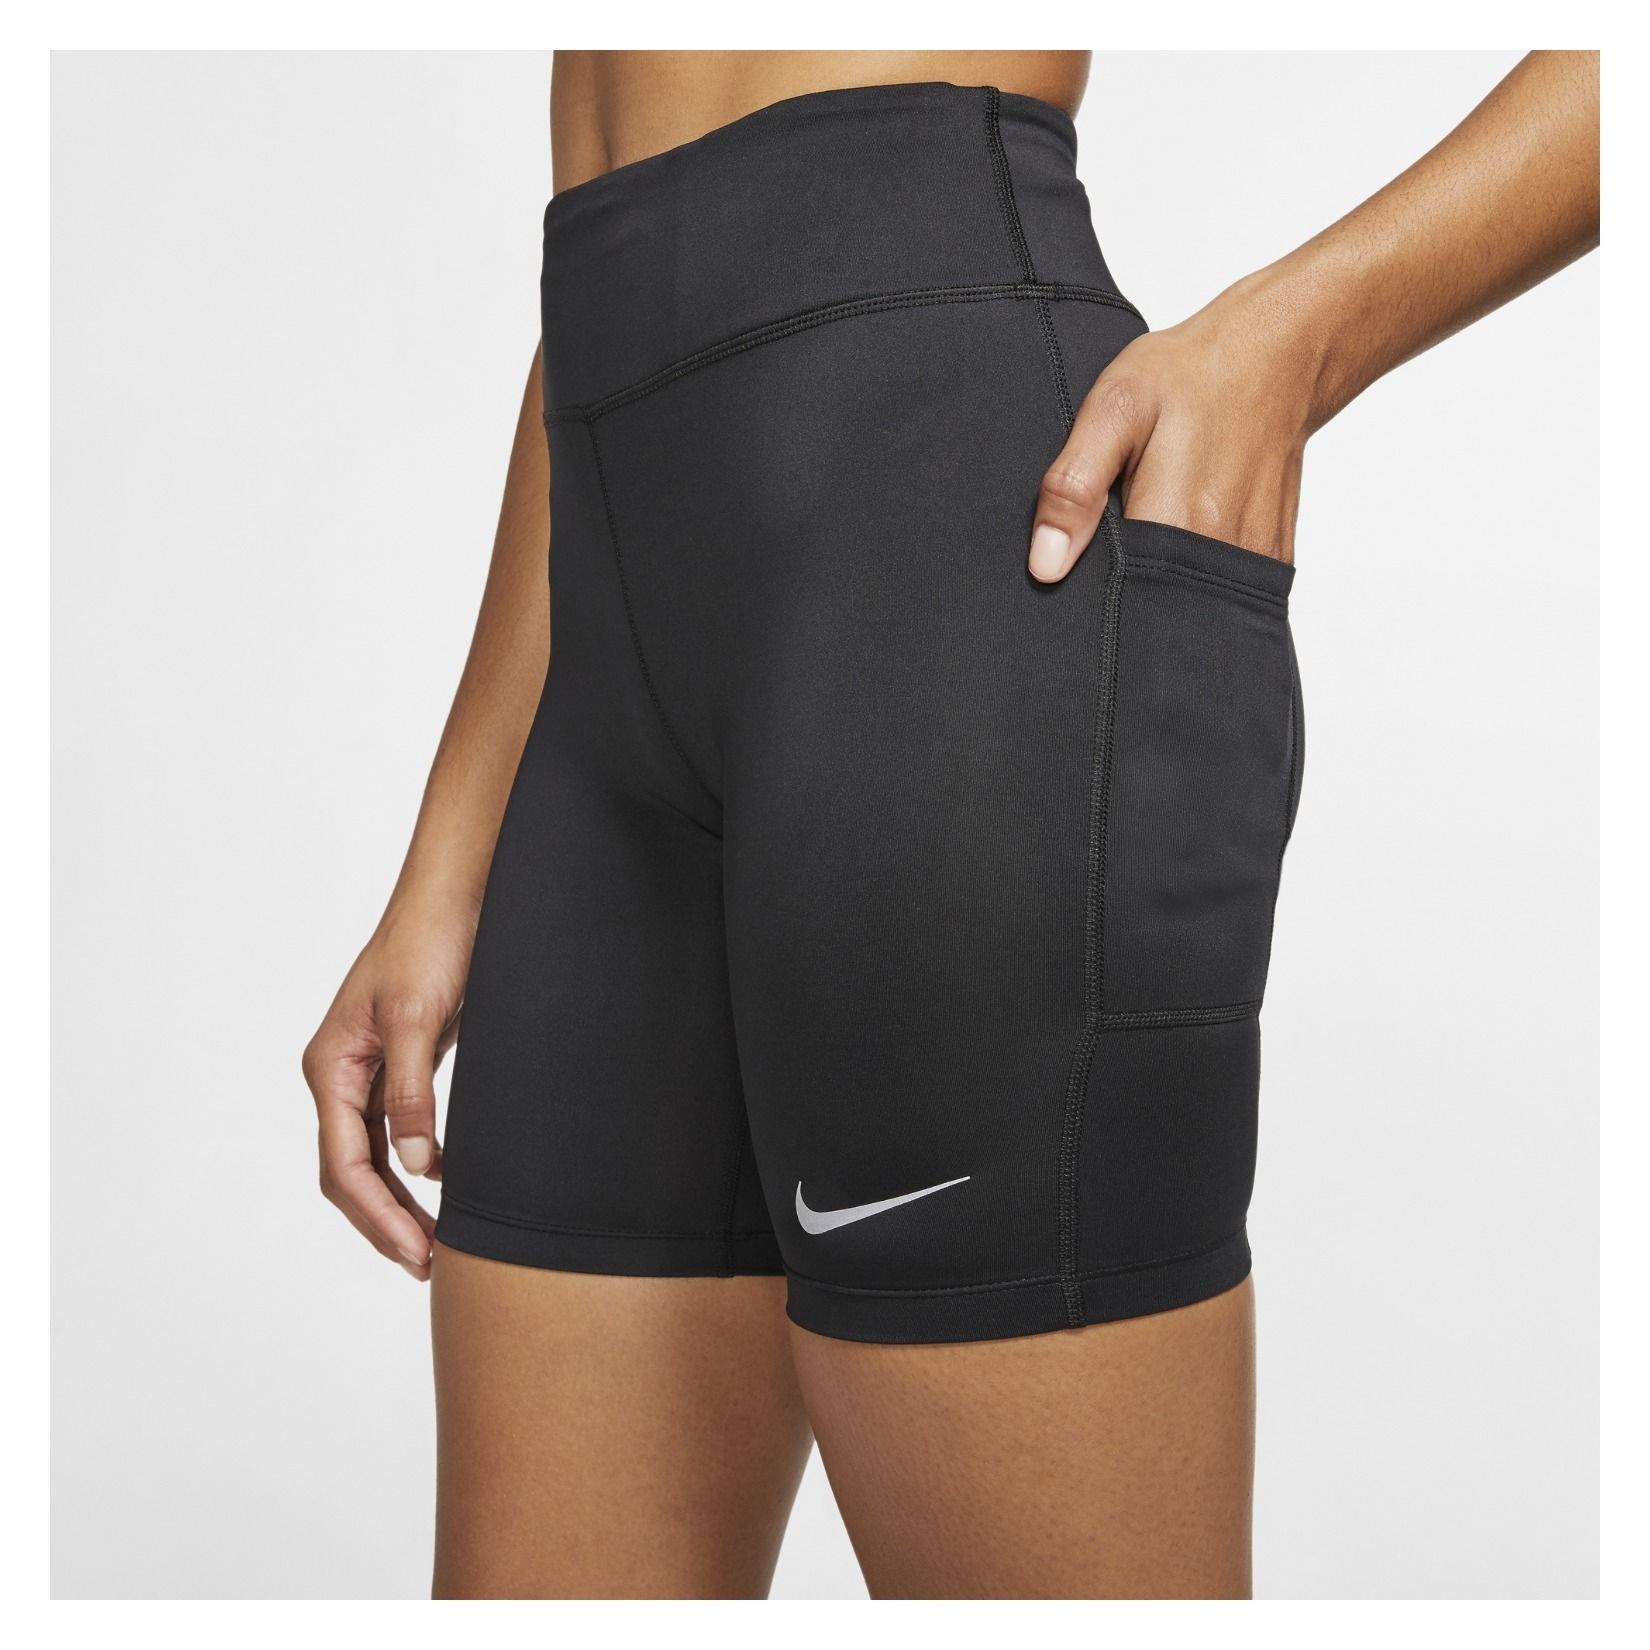 Nike Womens Fast Running Shorts - Kitlocker.com